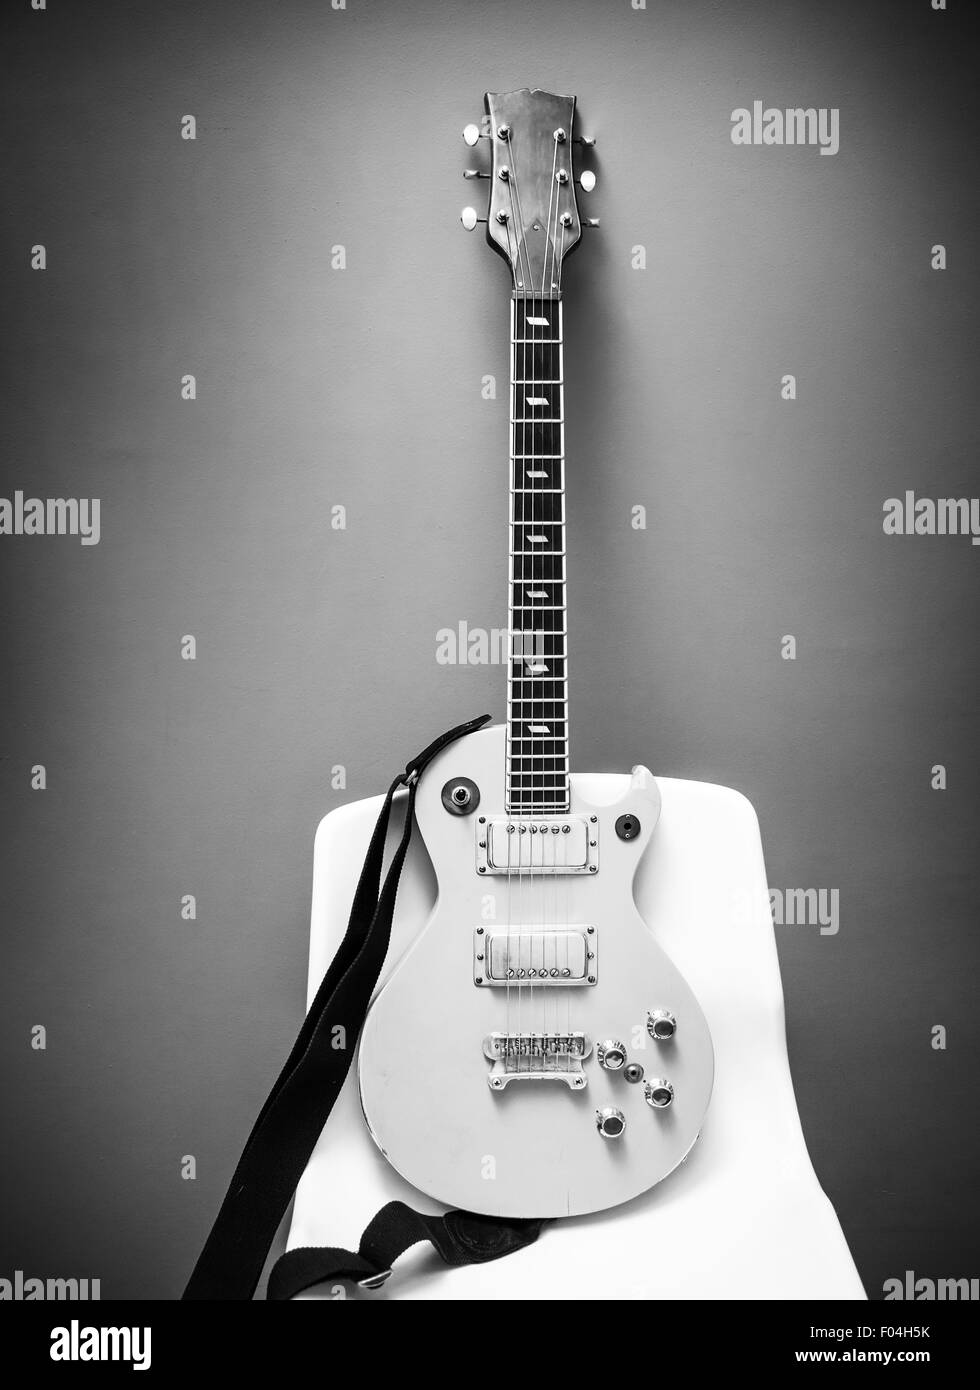 E-Gitarre, schwarz / weiß Foto Stockfoto